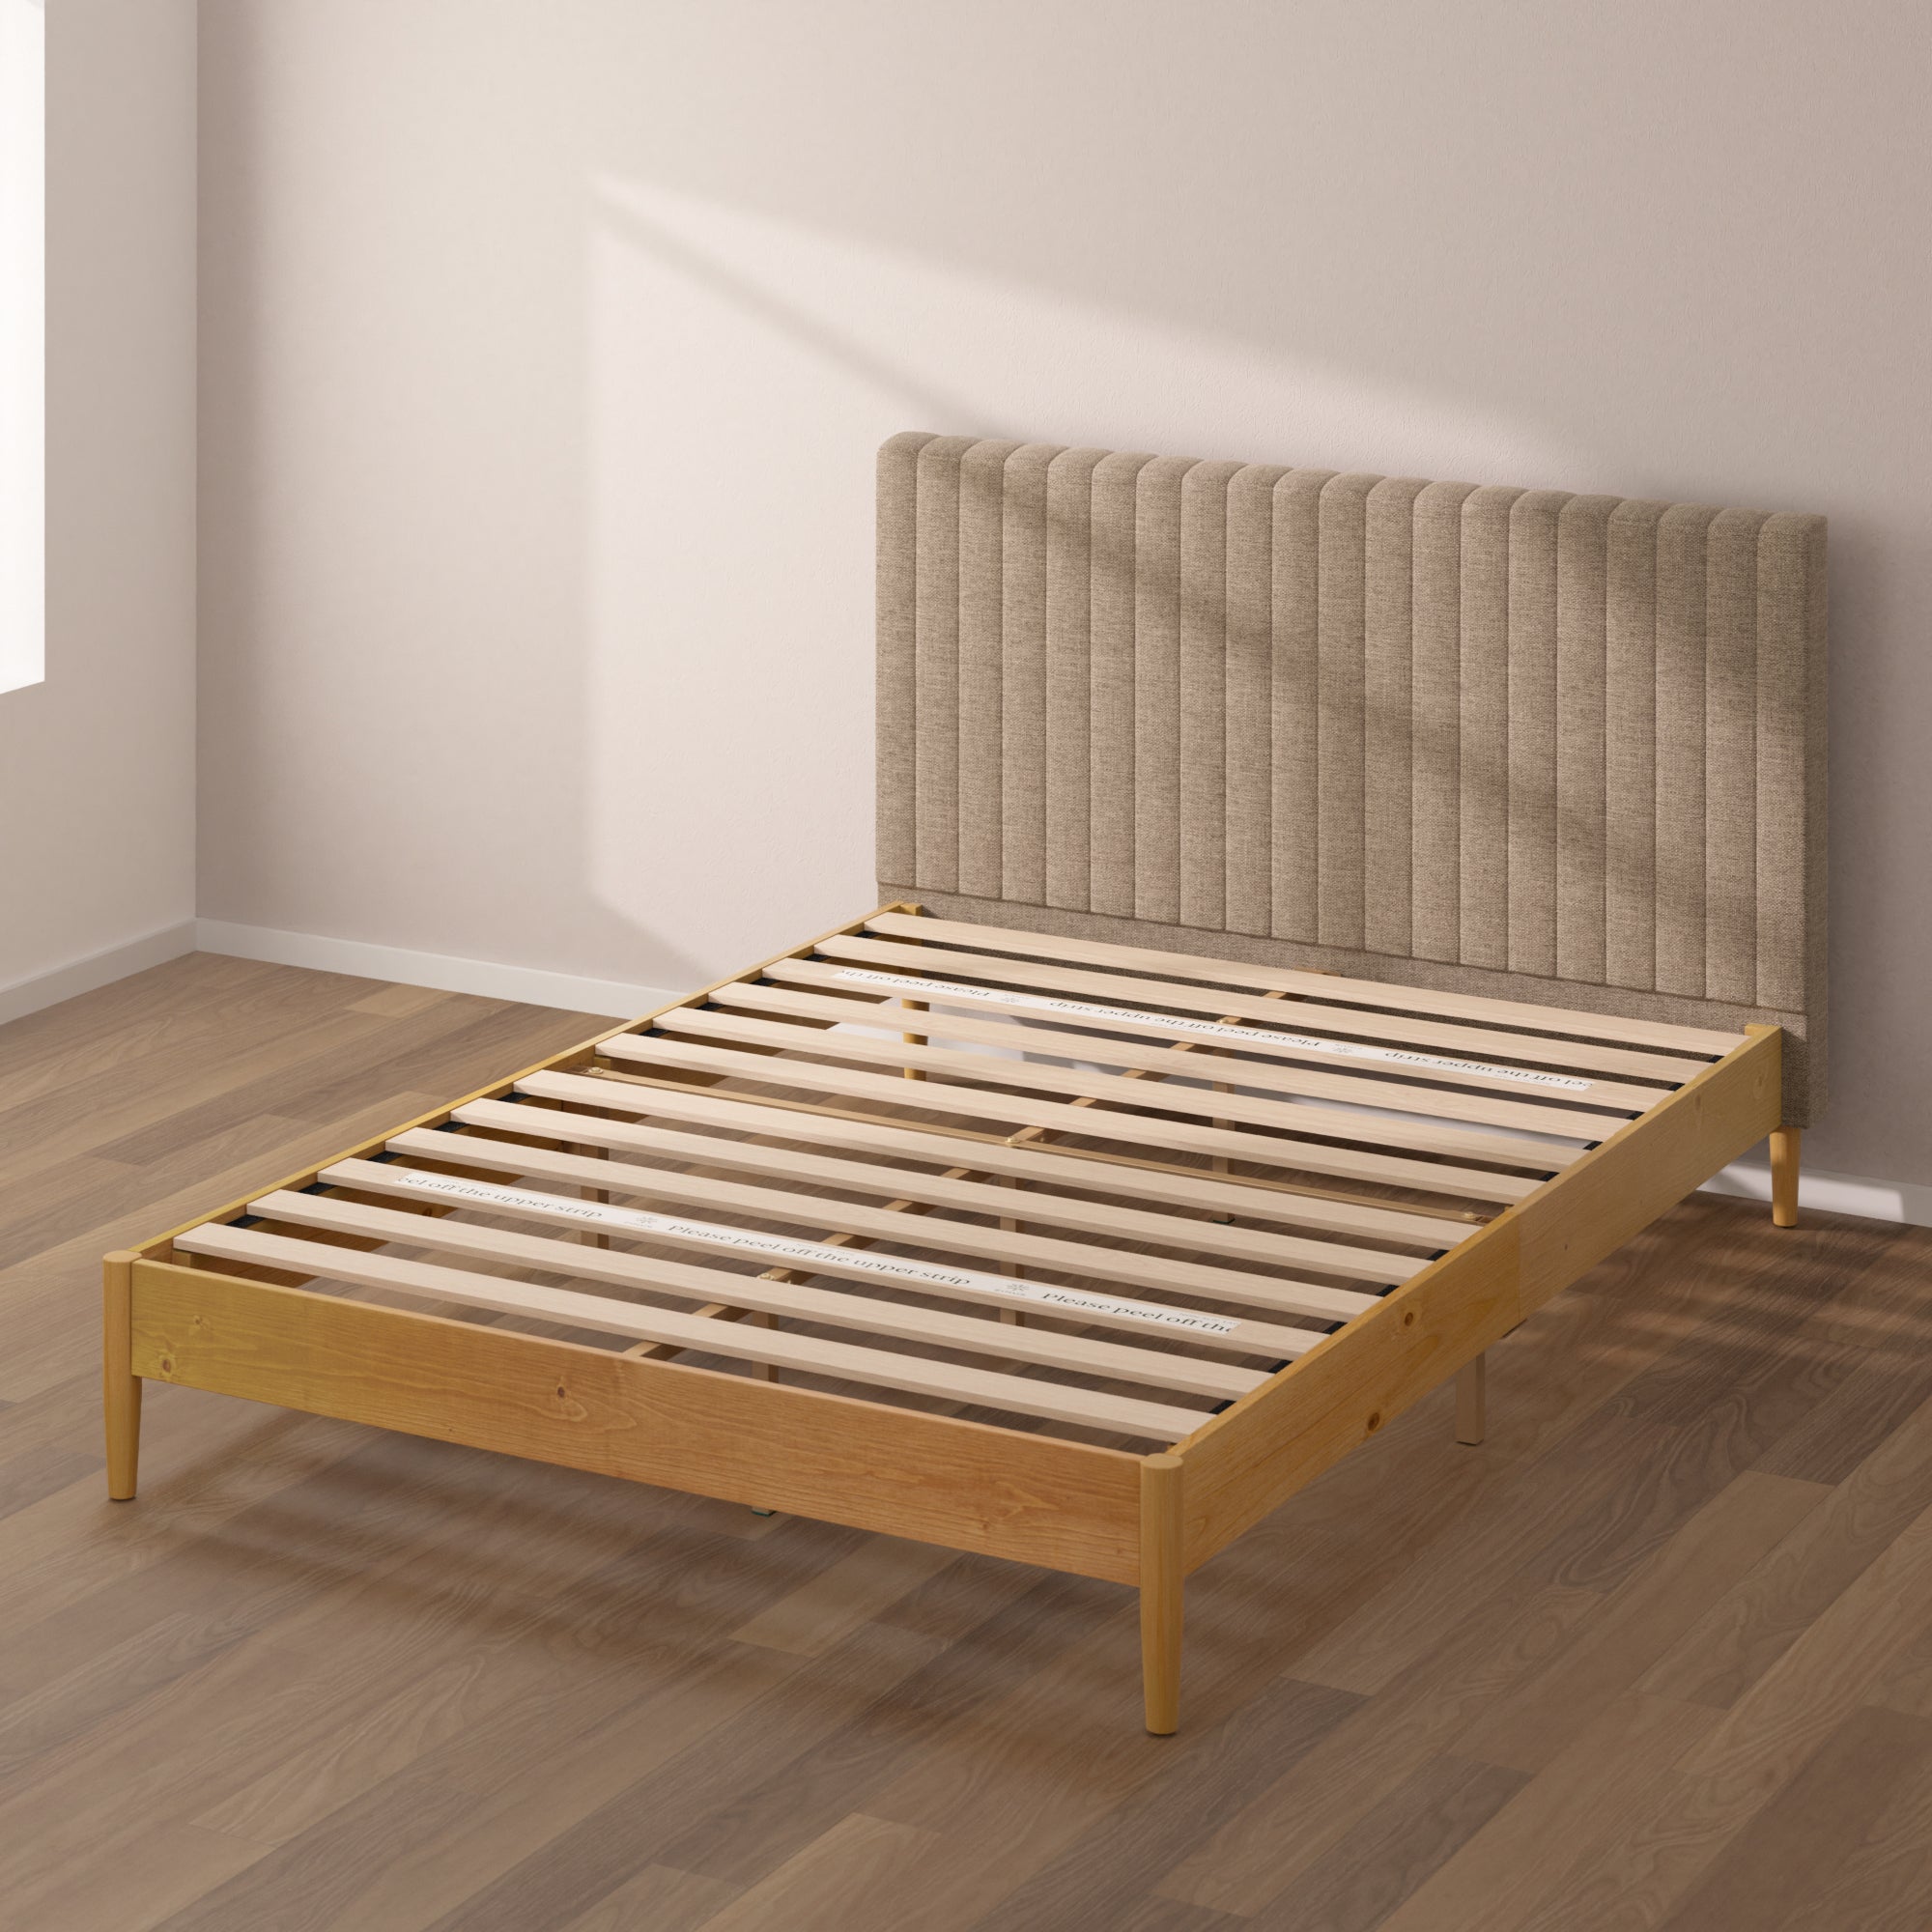 Amelia Upholstered and Wood Platform Bed Frame